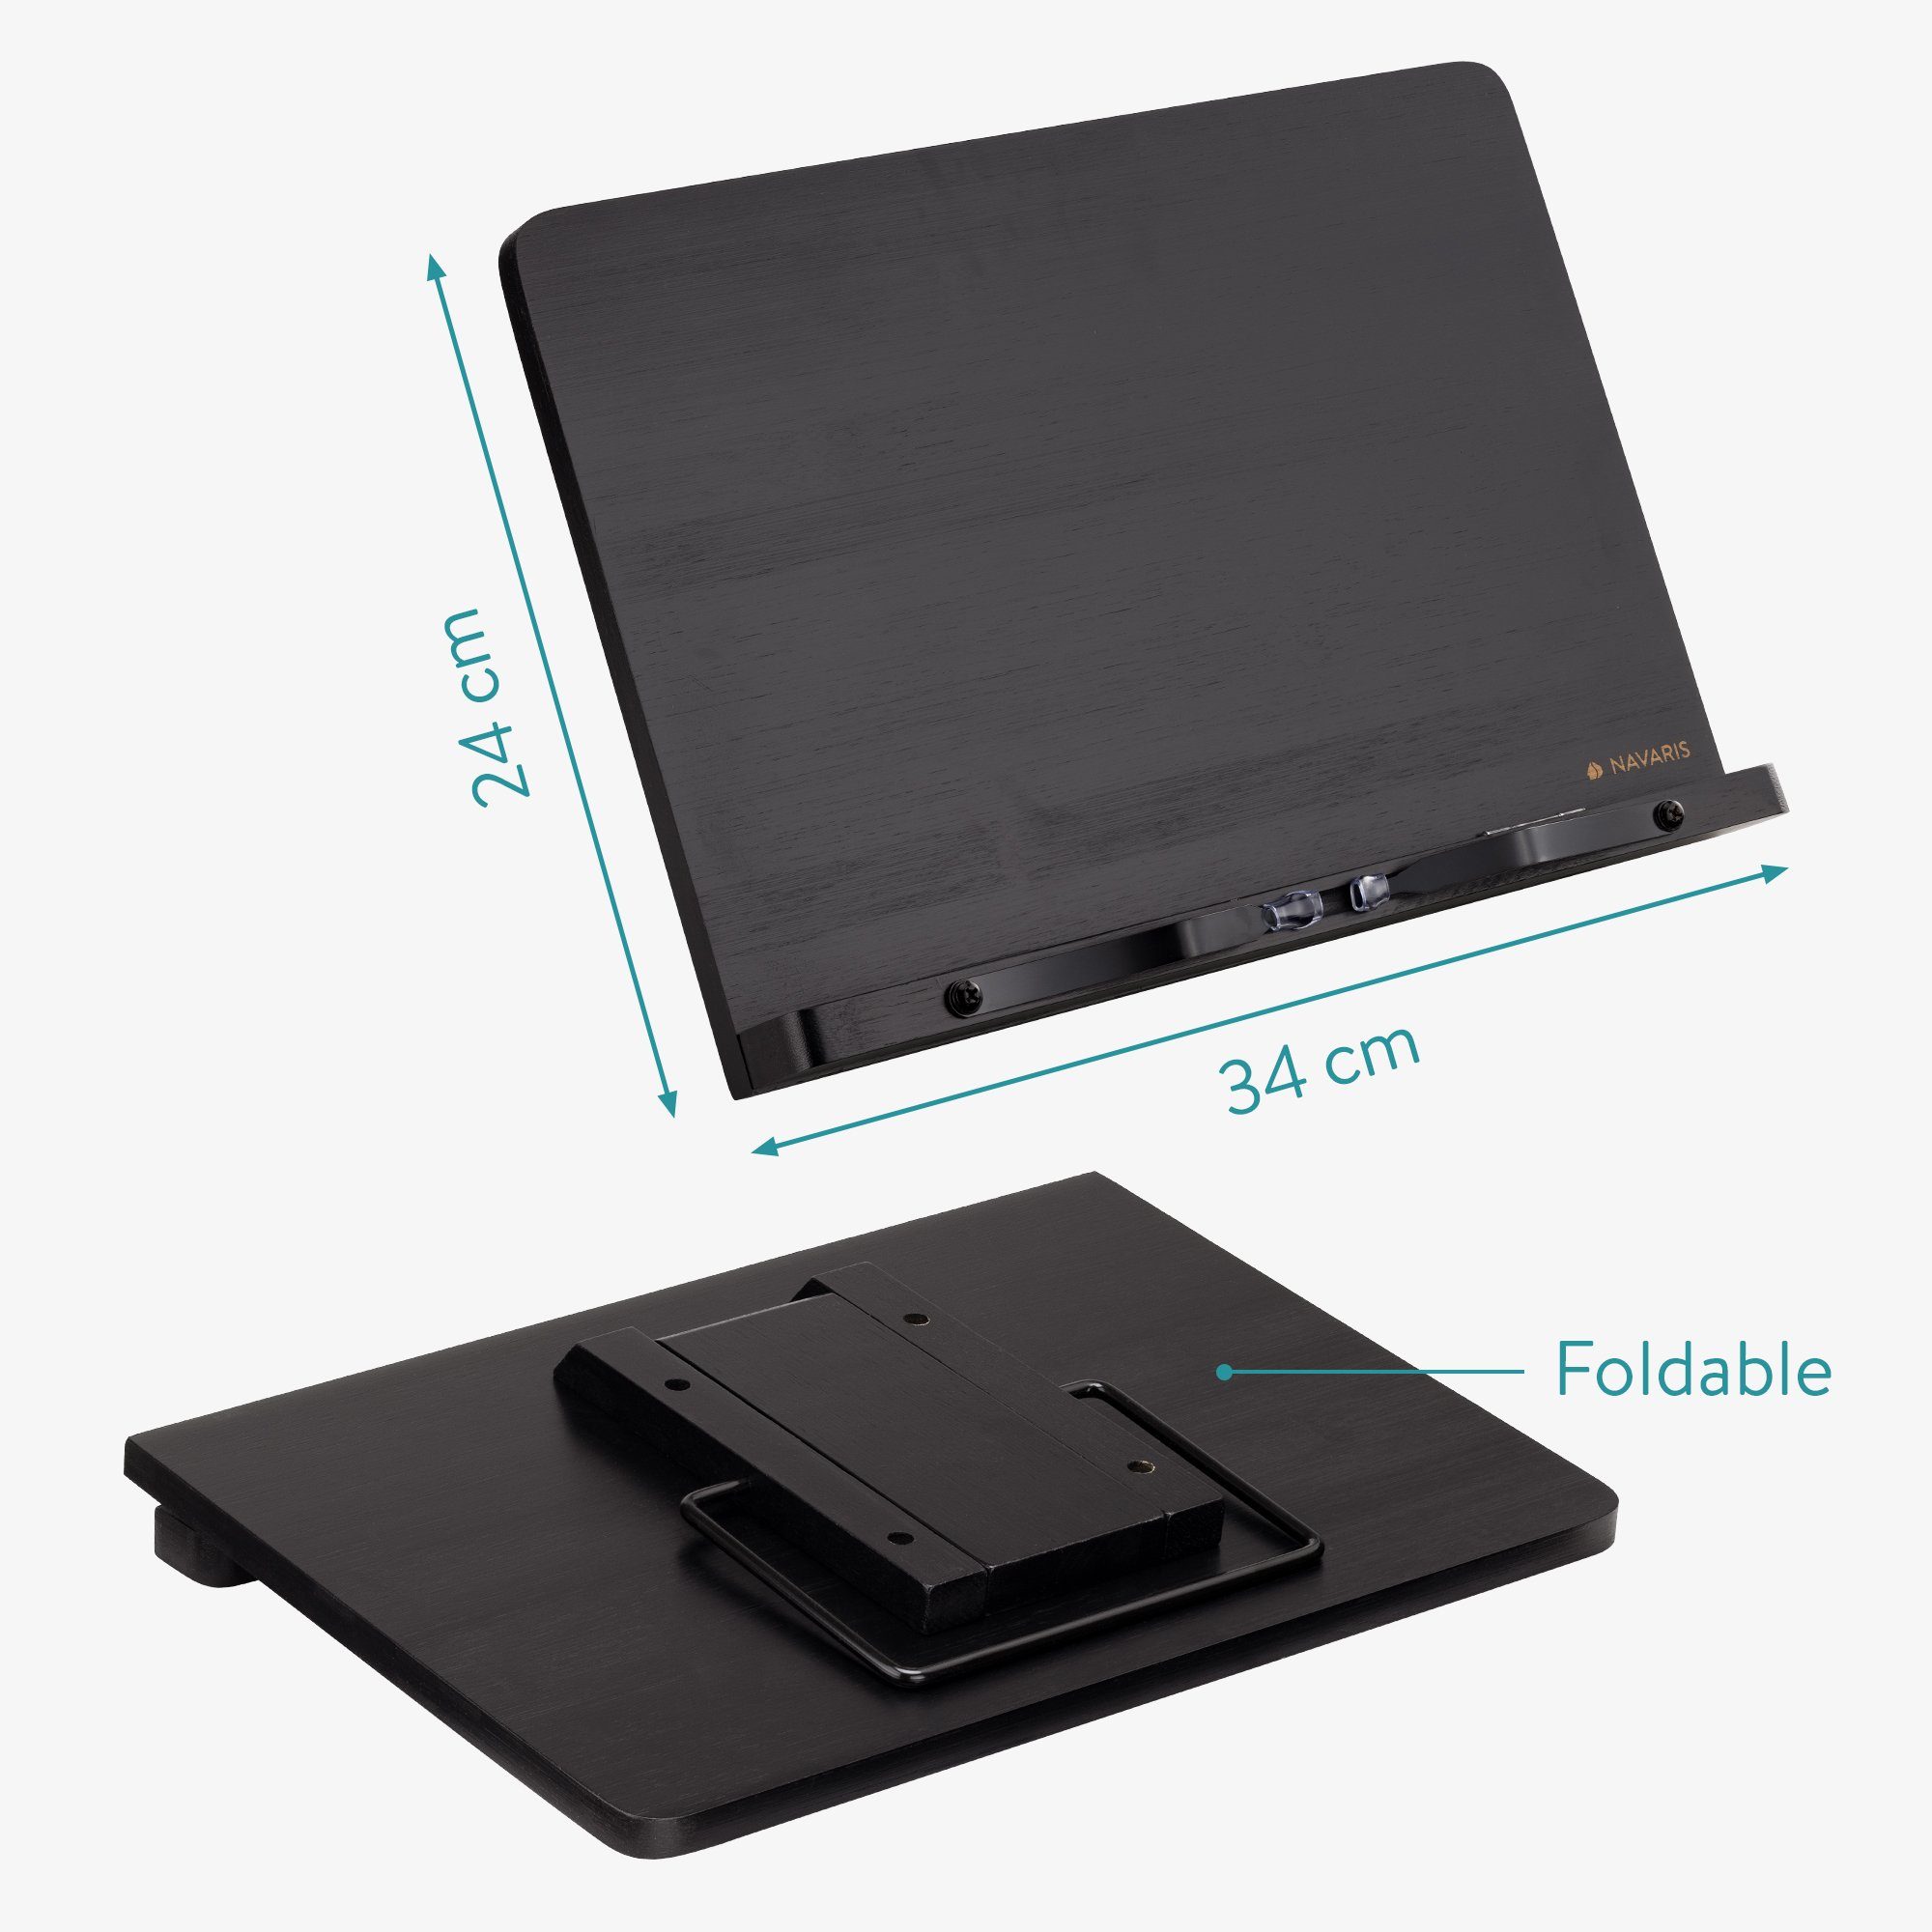 - Navaris iPad - kompatibel aus Buchständer Bambus - 34x24cm mit Schwarz Buchstütze